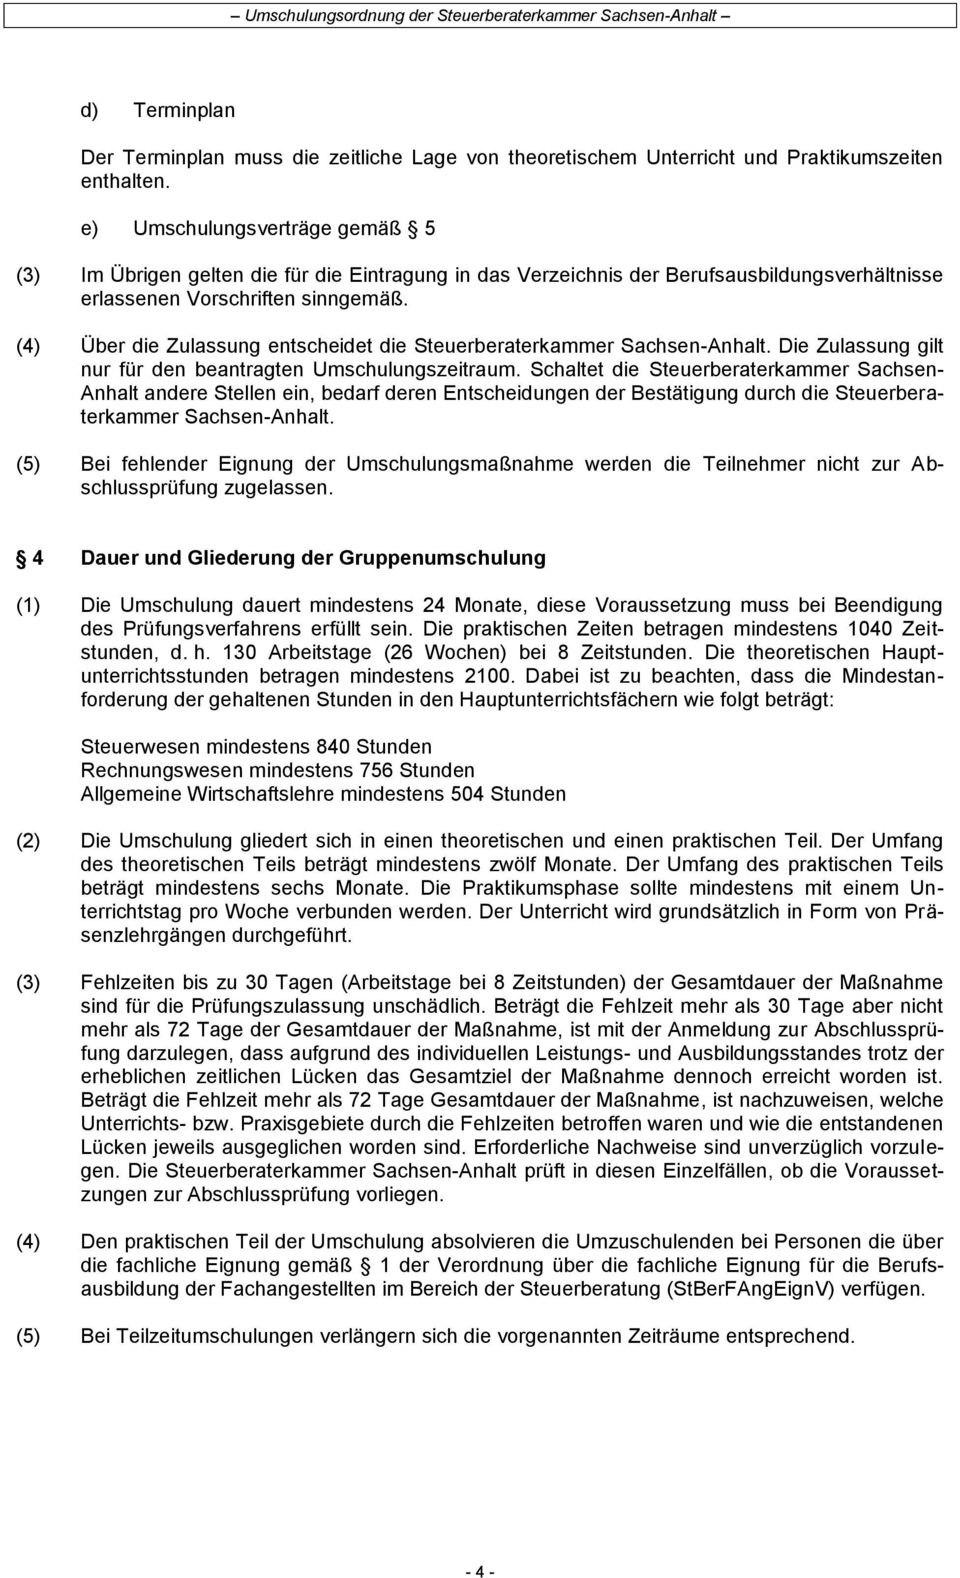 (4) Über die Zulassung entscheidet die Steuerberaterkammer Sachsen-Anhalt. Die Zulassung gilt nur für den beantragten Umschulungszeitraum.